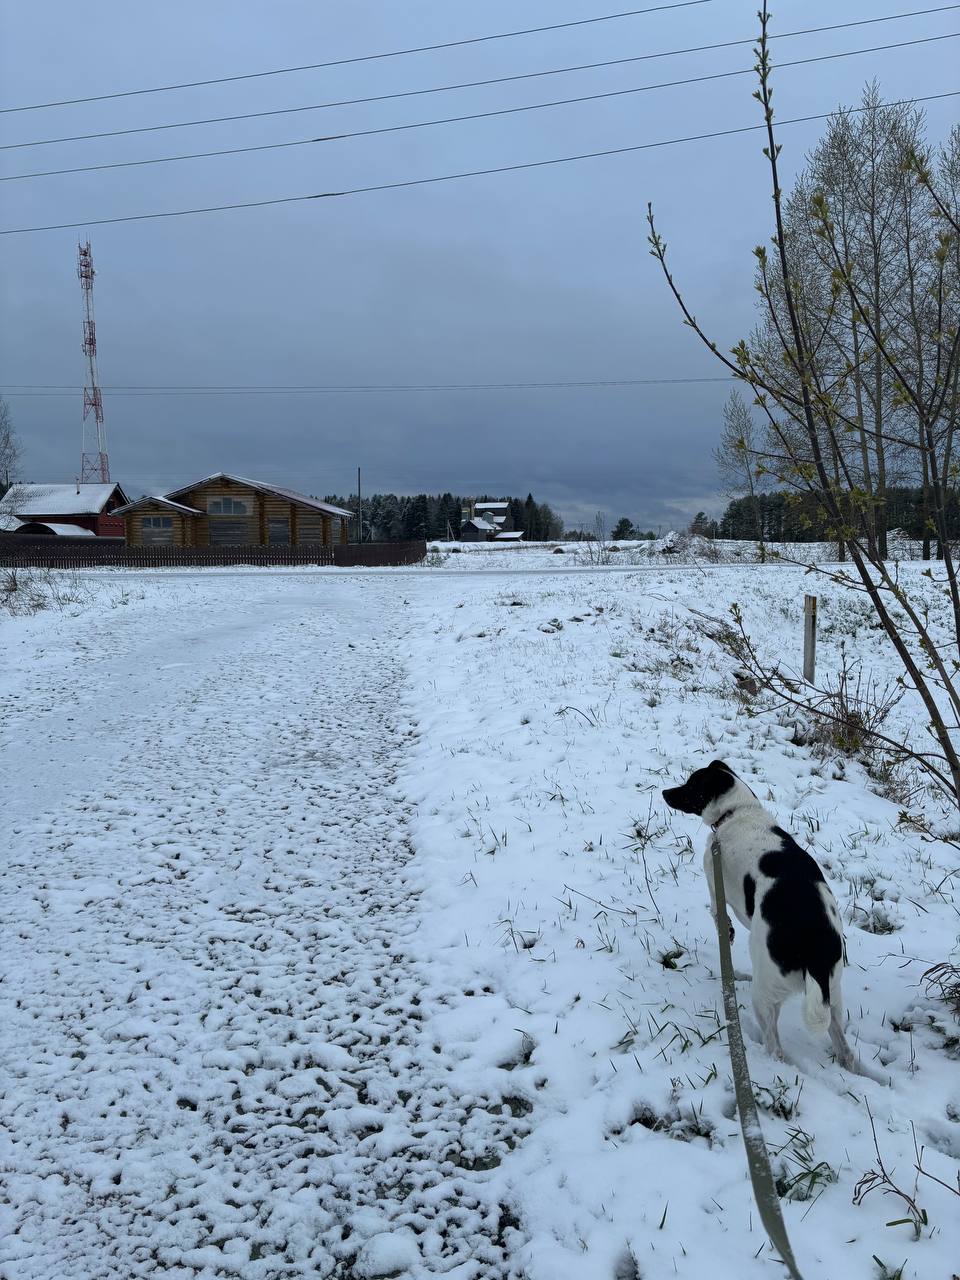 Киров укутается в сугробы: на область надвигается снежный шторм